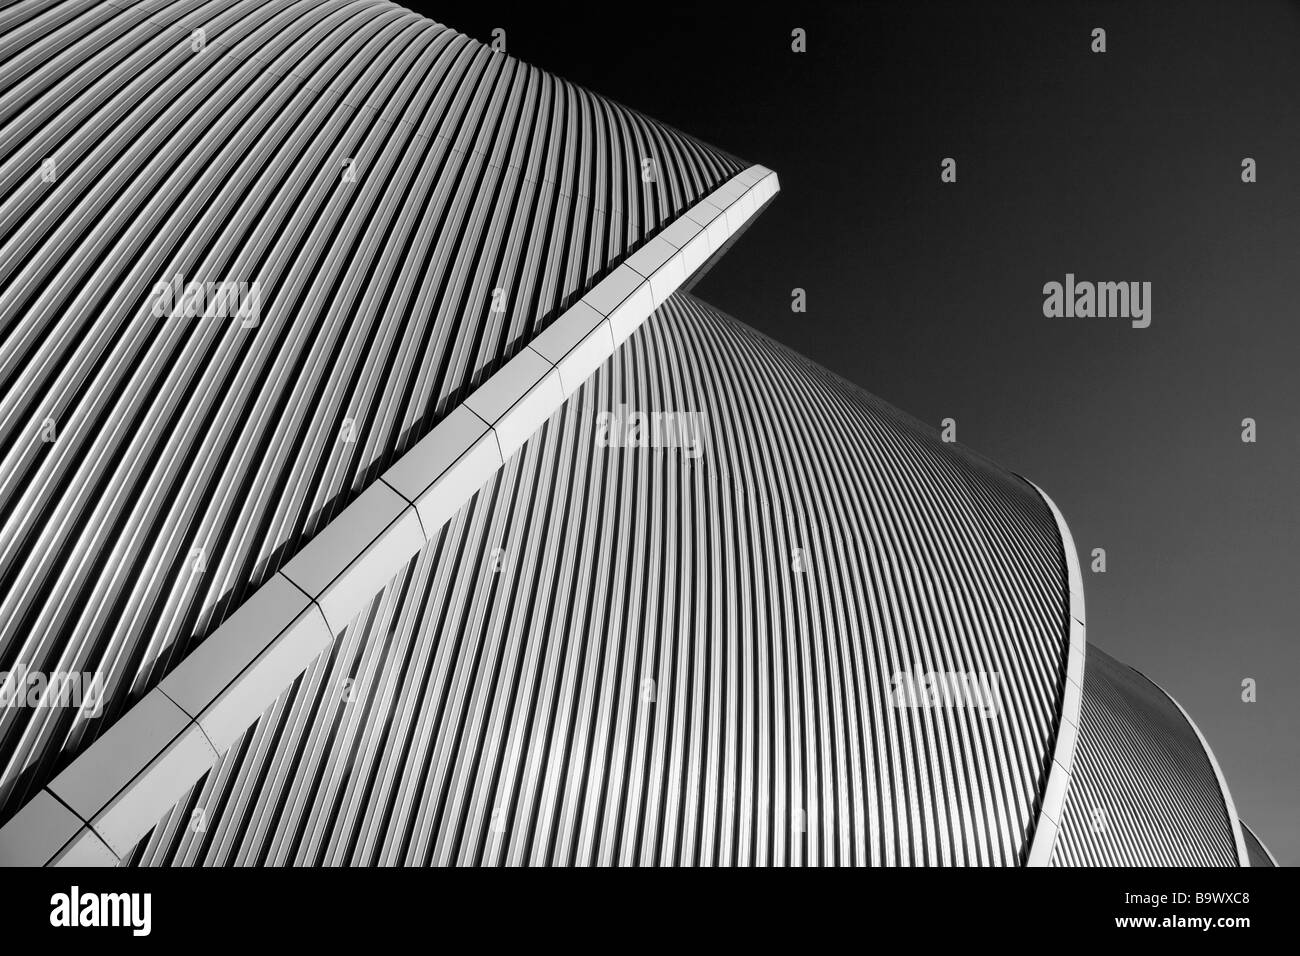 Un dettaglio architettonico dell'edificio Armadillo presso la SEC, che sorge sulle rive del fiume Clyde, Glasgow, Scozia Foto Stock